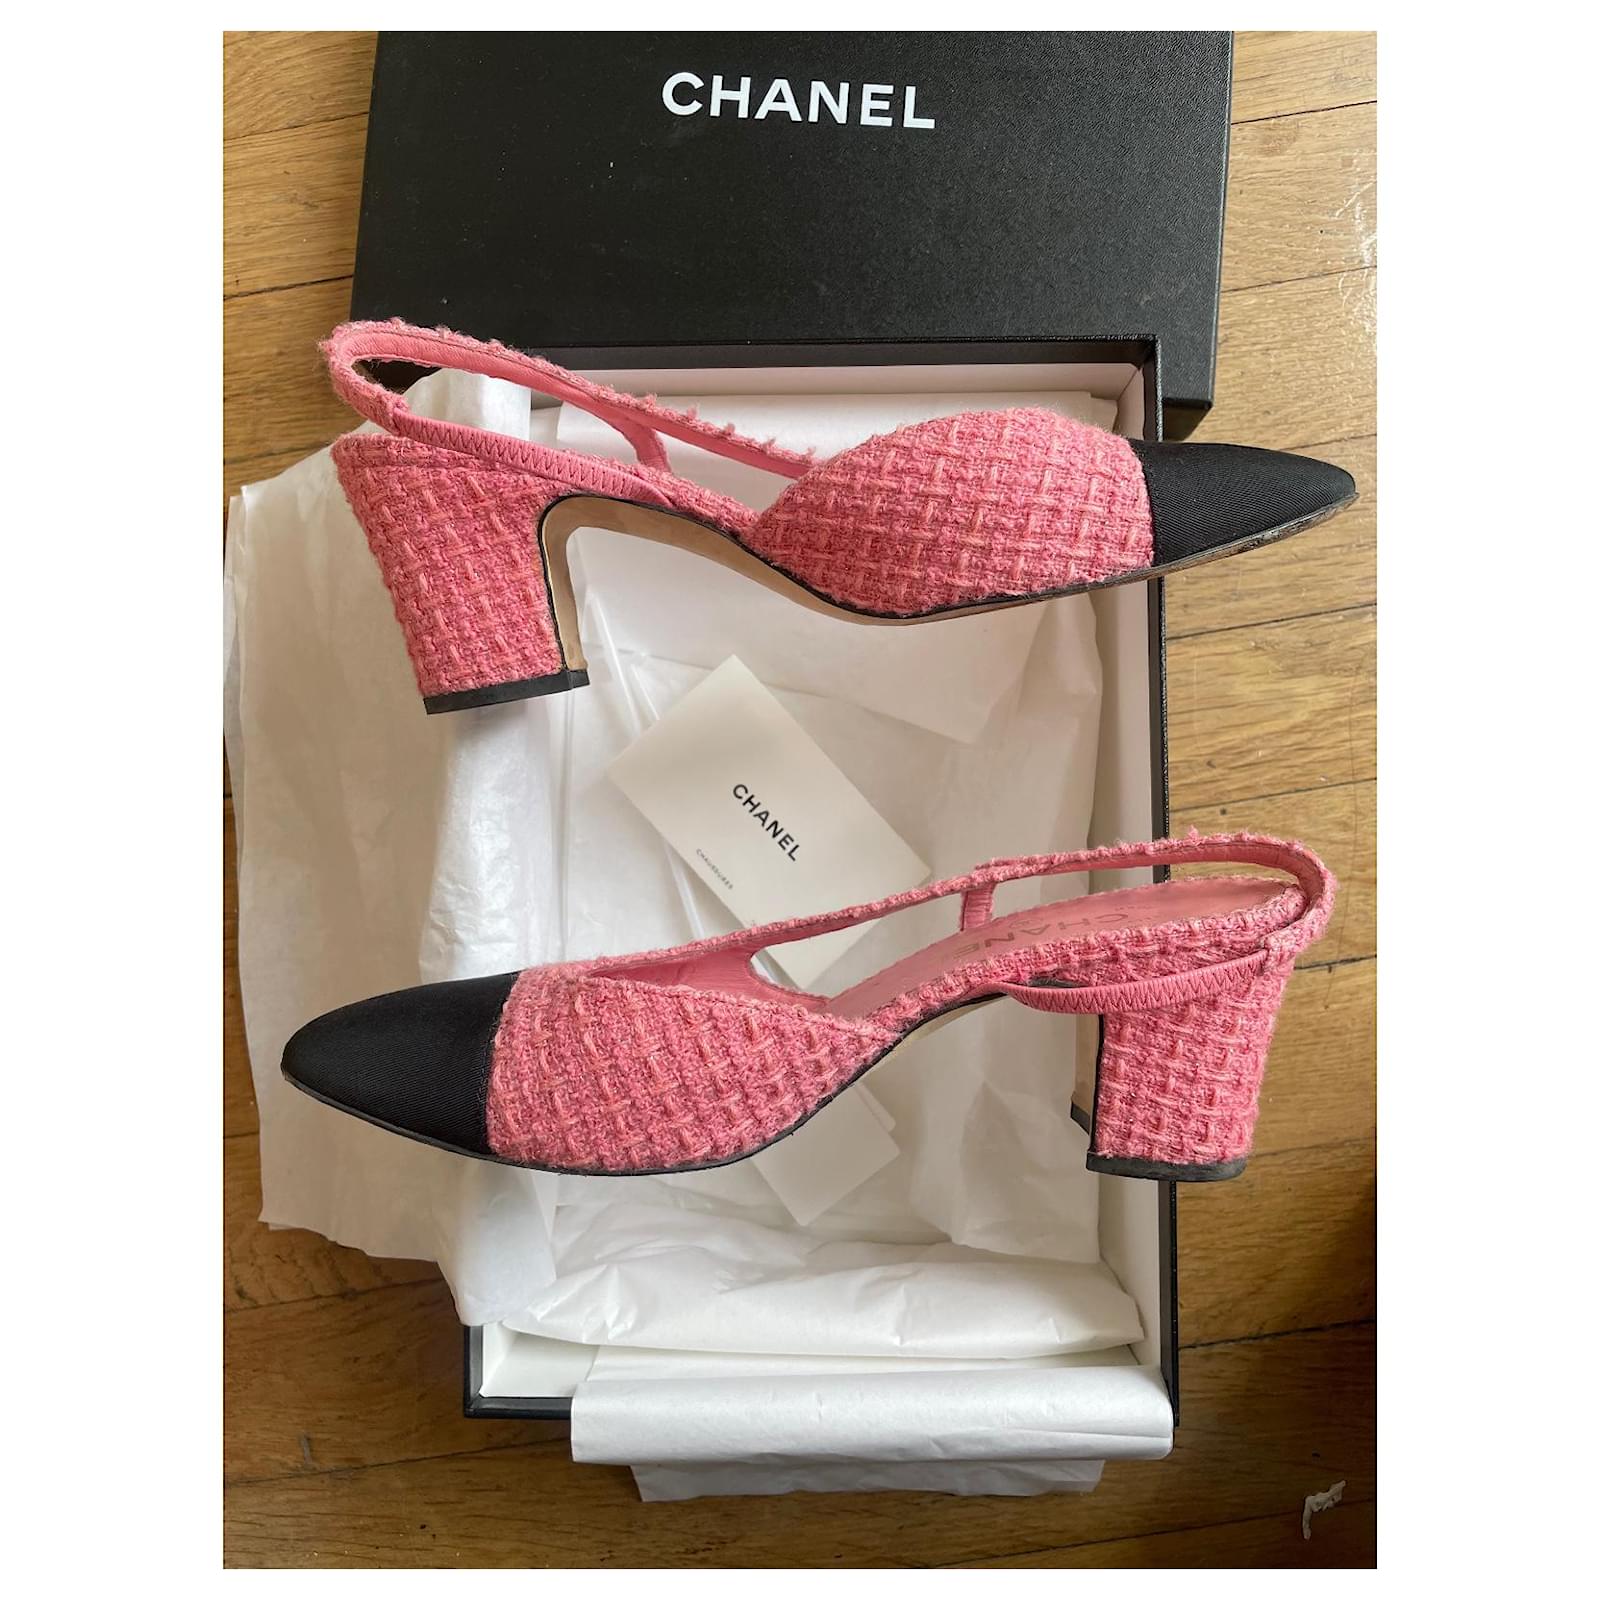 Chanel slingback bicolore vintage - Pomella Vintage shop online